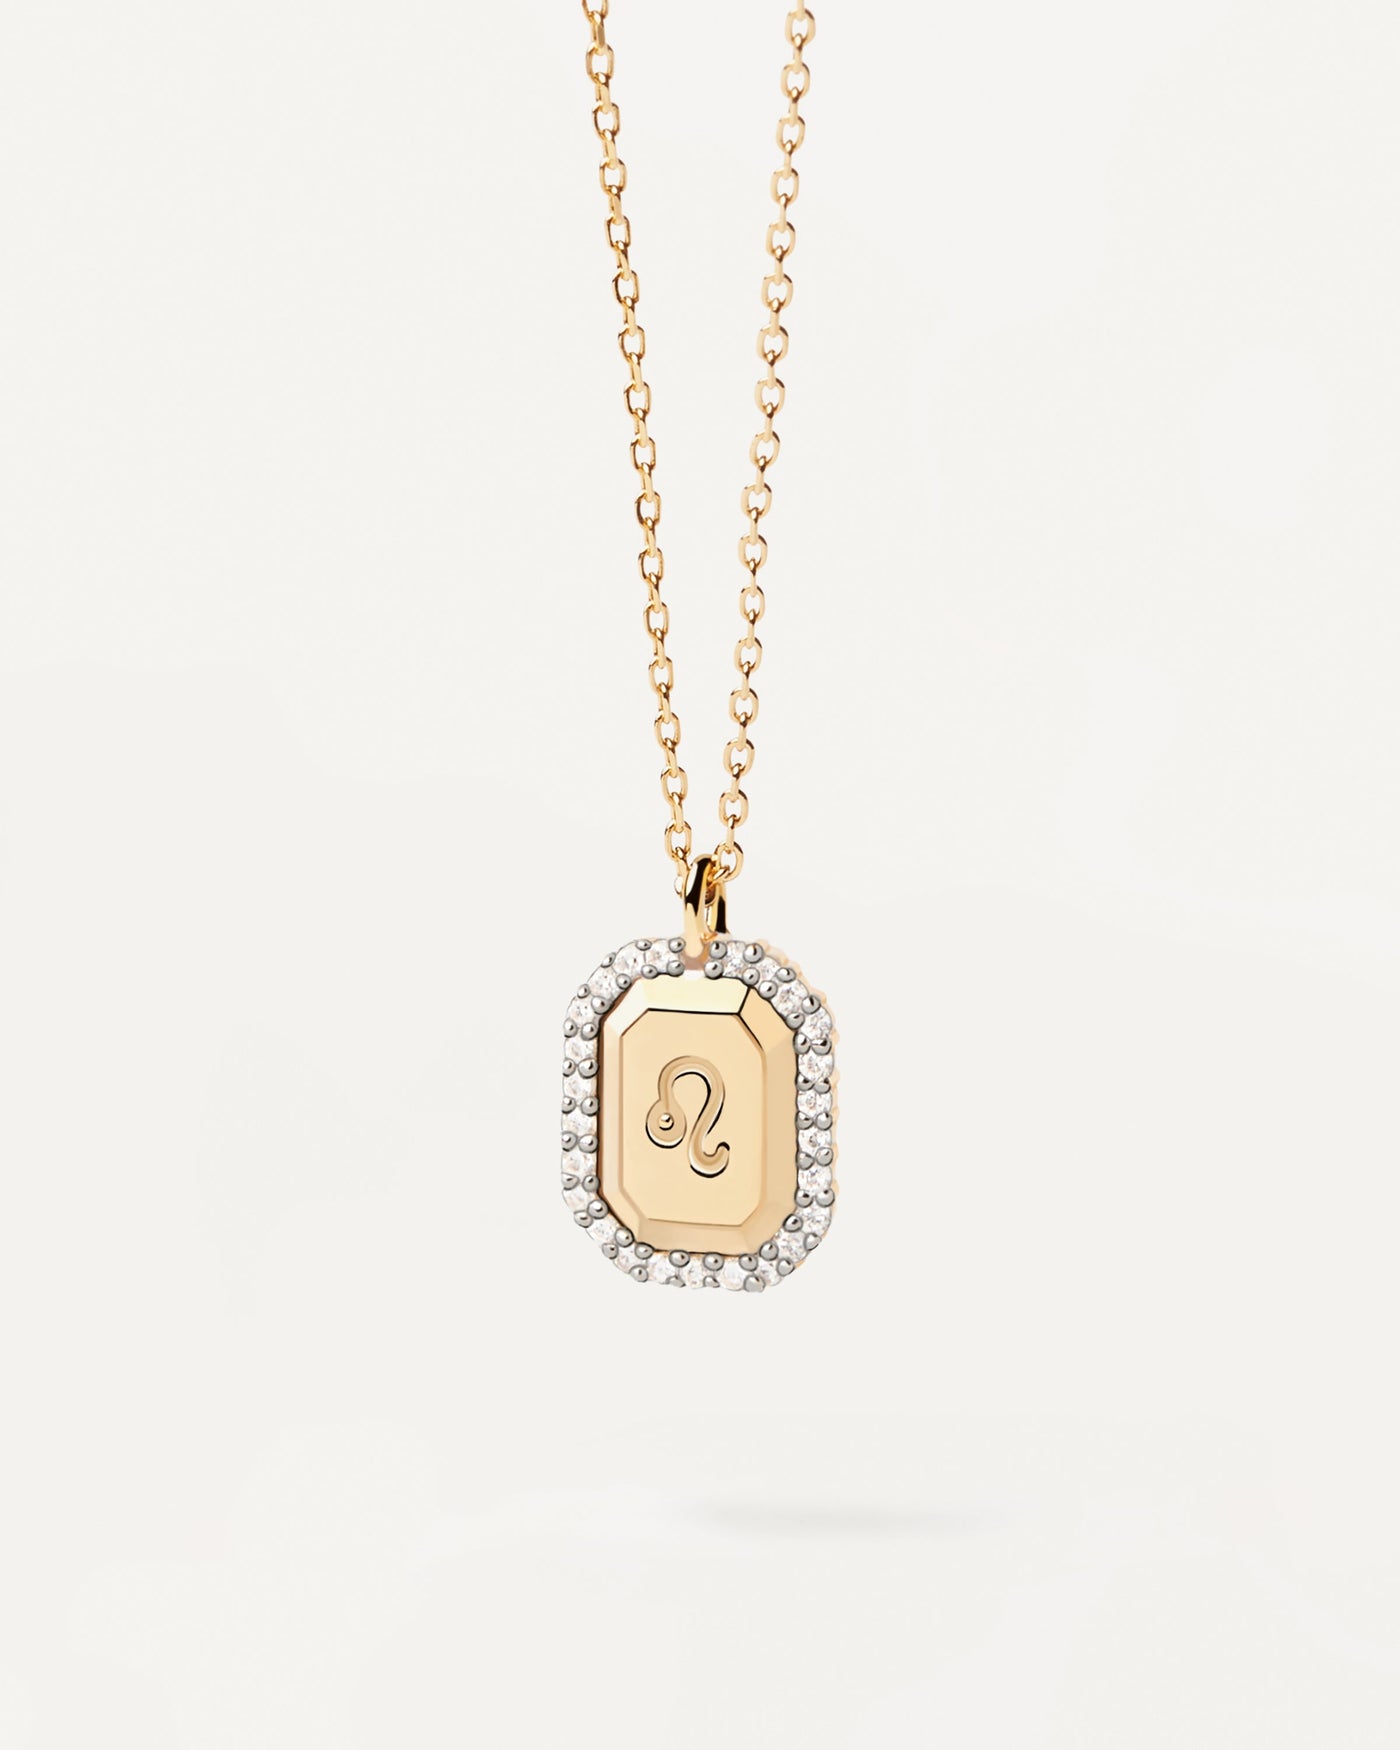 Collar Leo. Collar de plata bañada de oro con grabado del símbolo de la constelación de Leo. Consigue las últimas novedades de PDPAOLA. Haz tu pedido de forma segura y obtén este Best Seller.